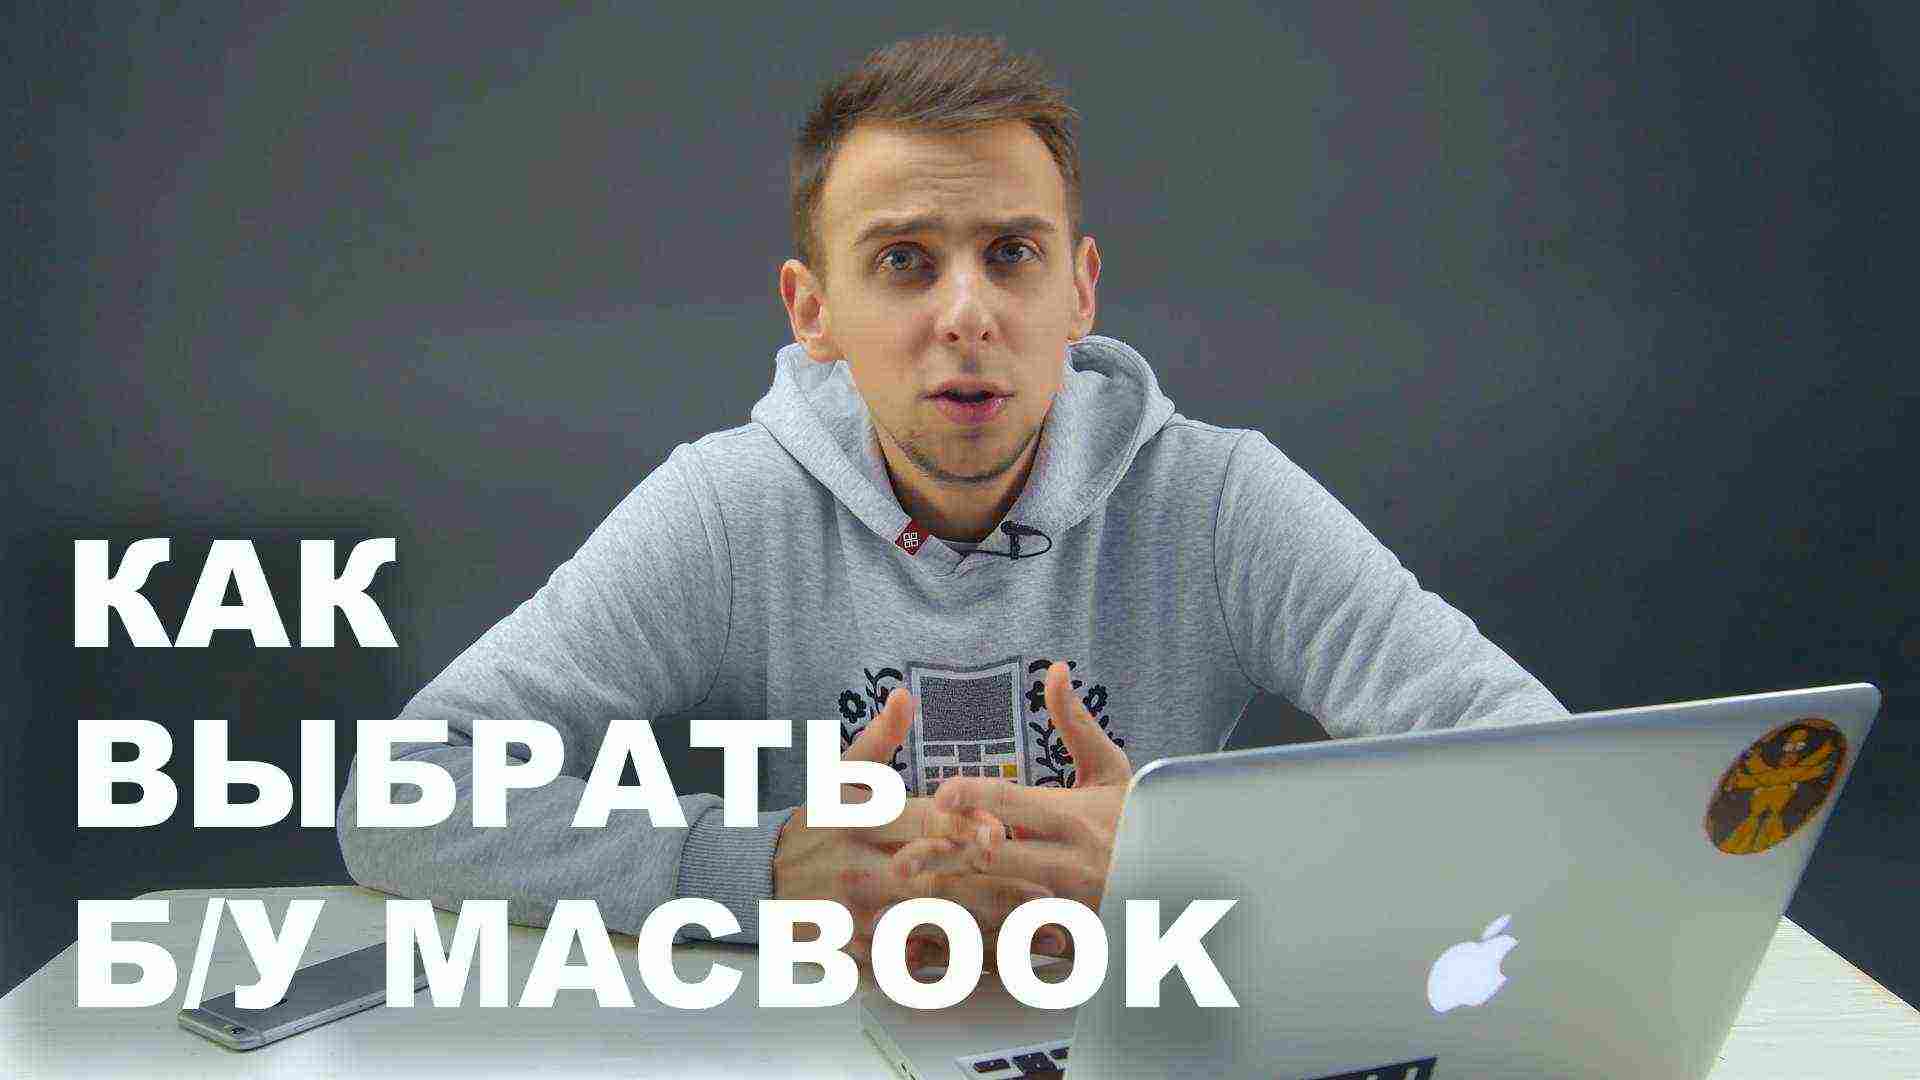 Как купить б/у Macbook. Полное руководство